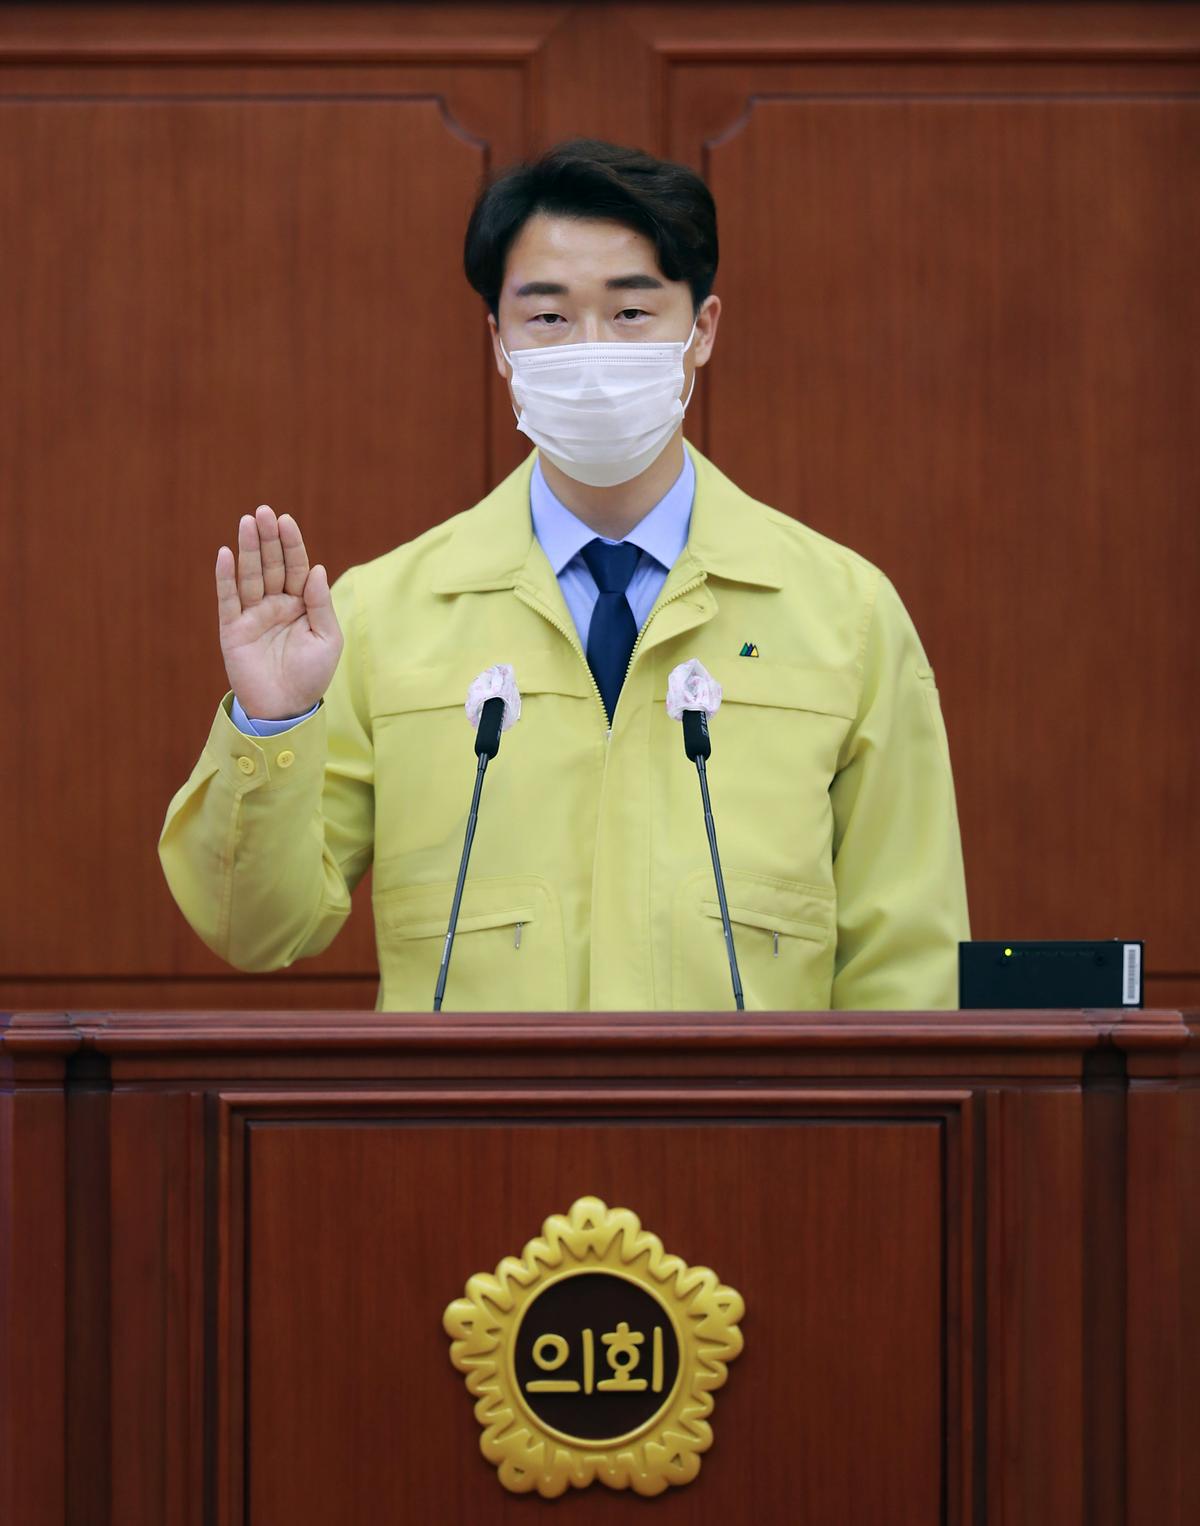 박수빈 의원, 당선의원 선서 [ 2020-06-01 ]